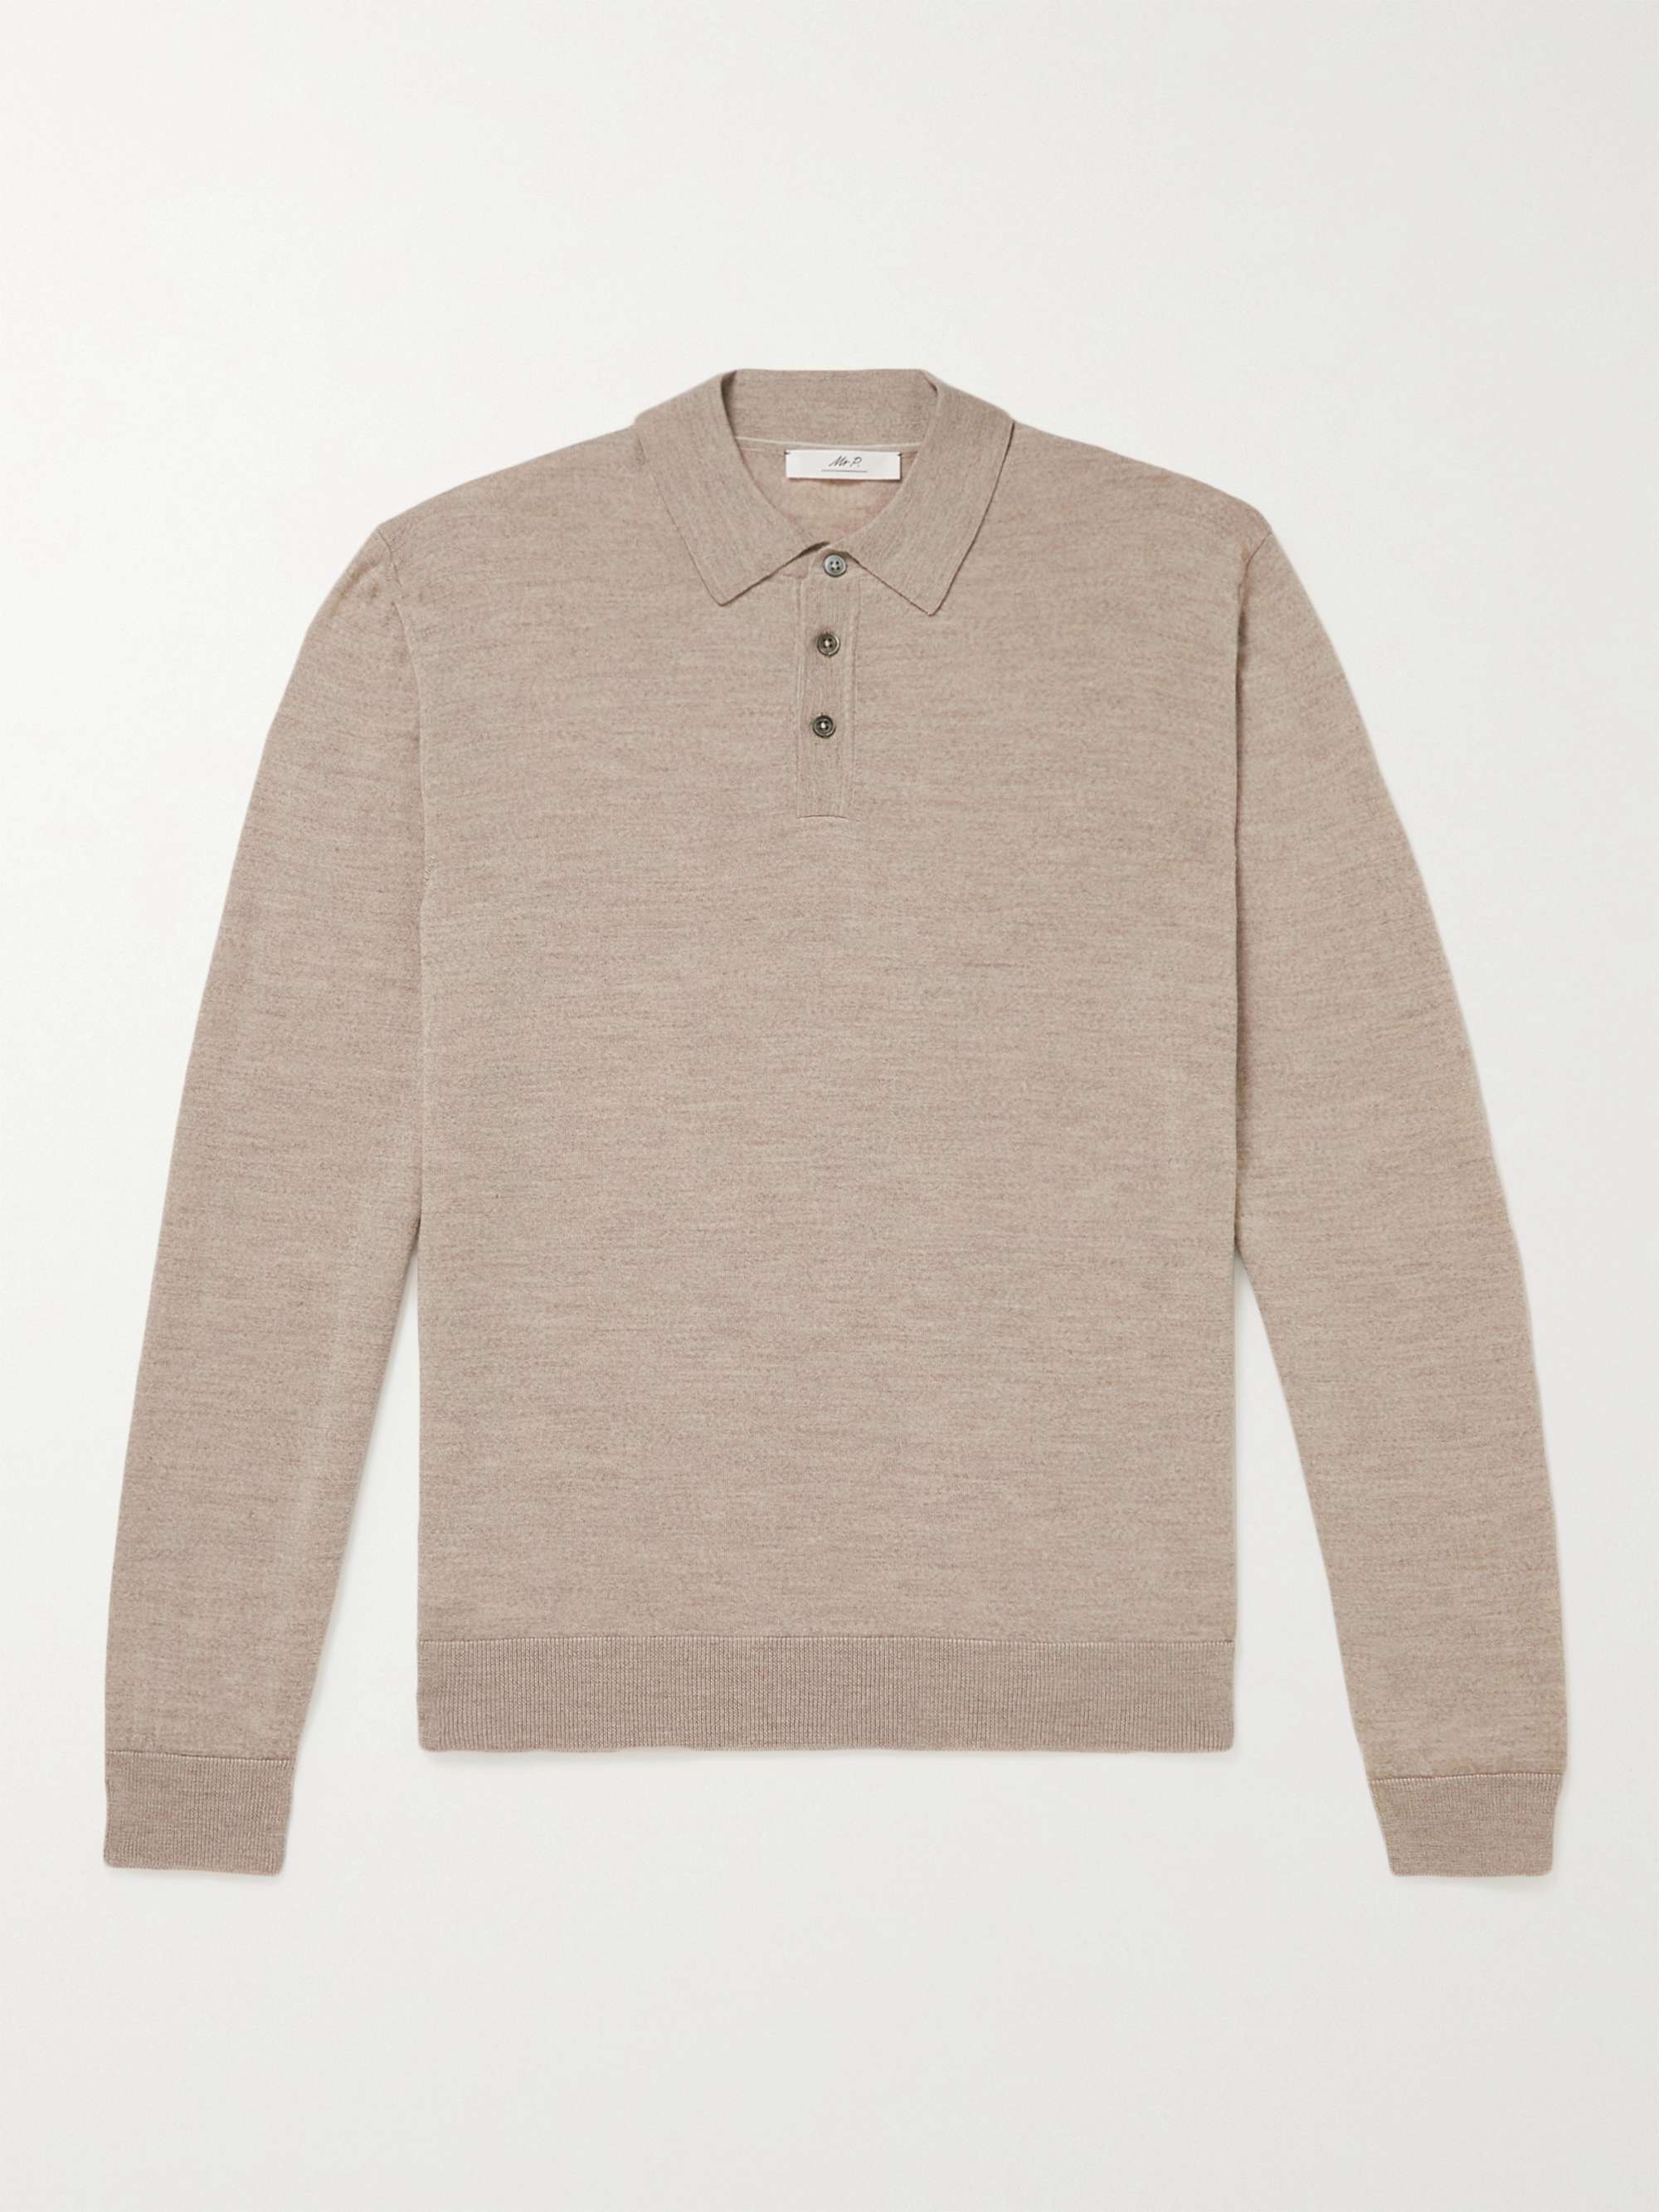 MR P. Slim-Fit Merino Wool Polo Shirt